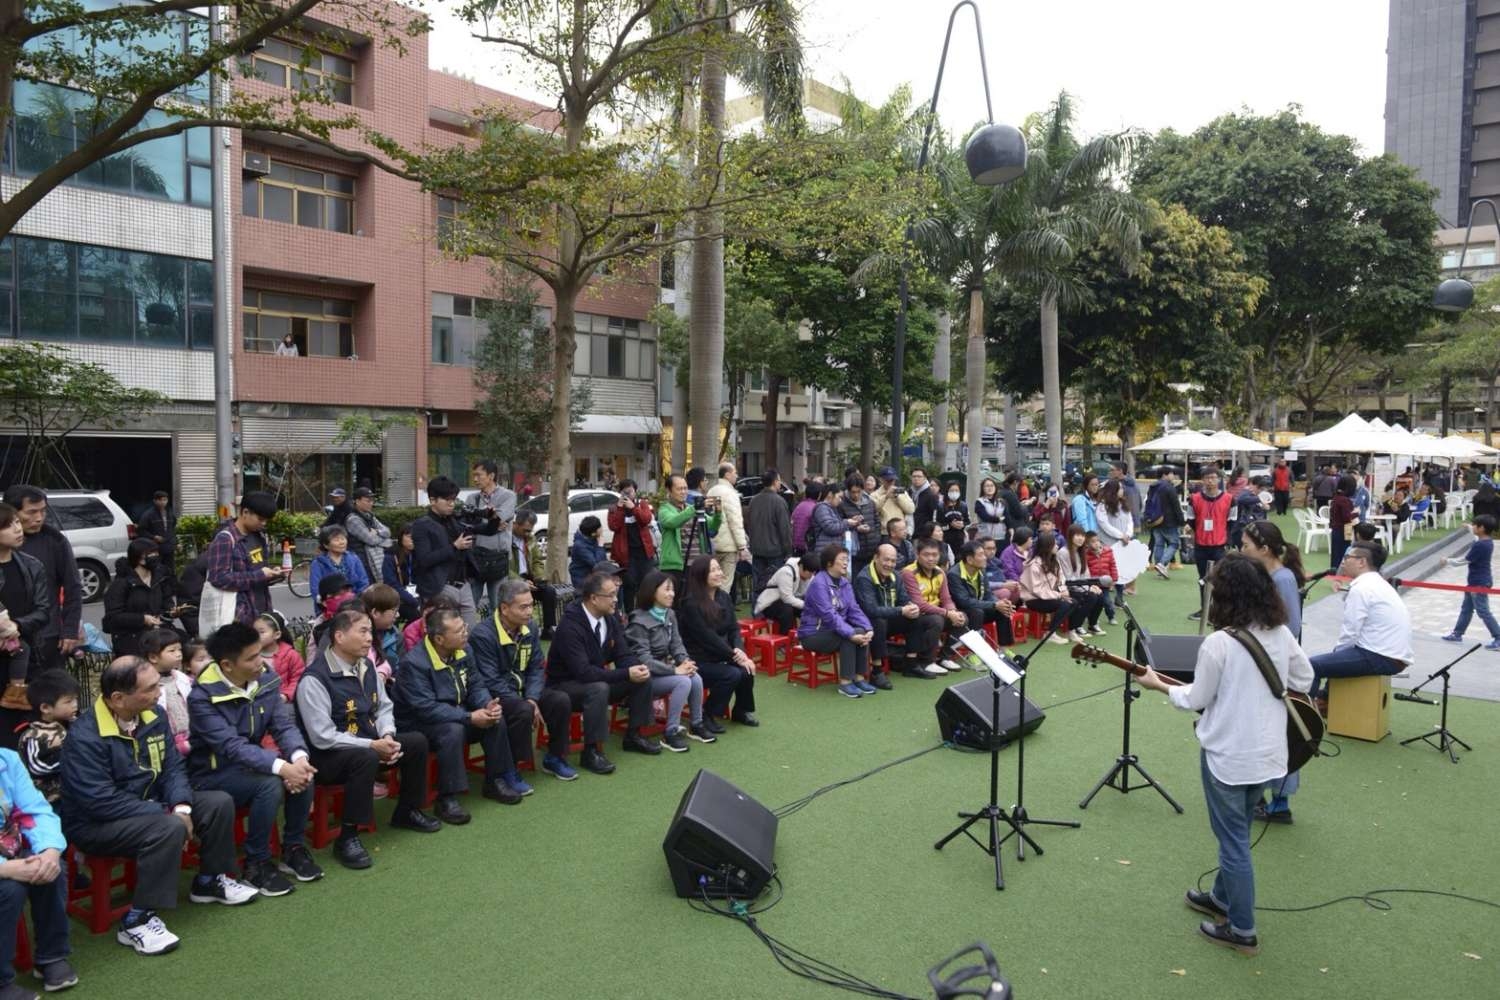 竹市慶祝婦女節 「美好時代」音樂與市集共享假日午後